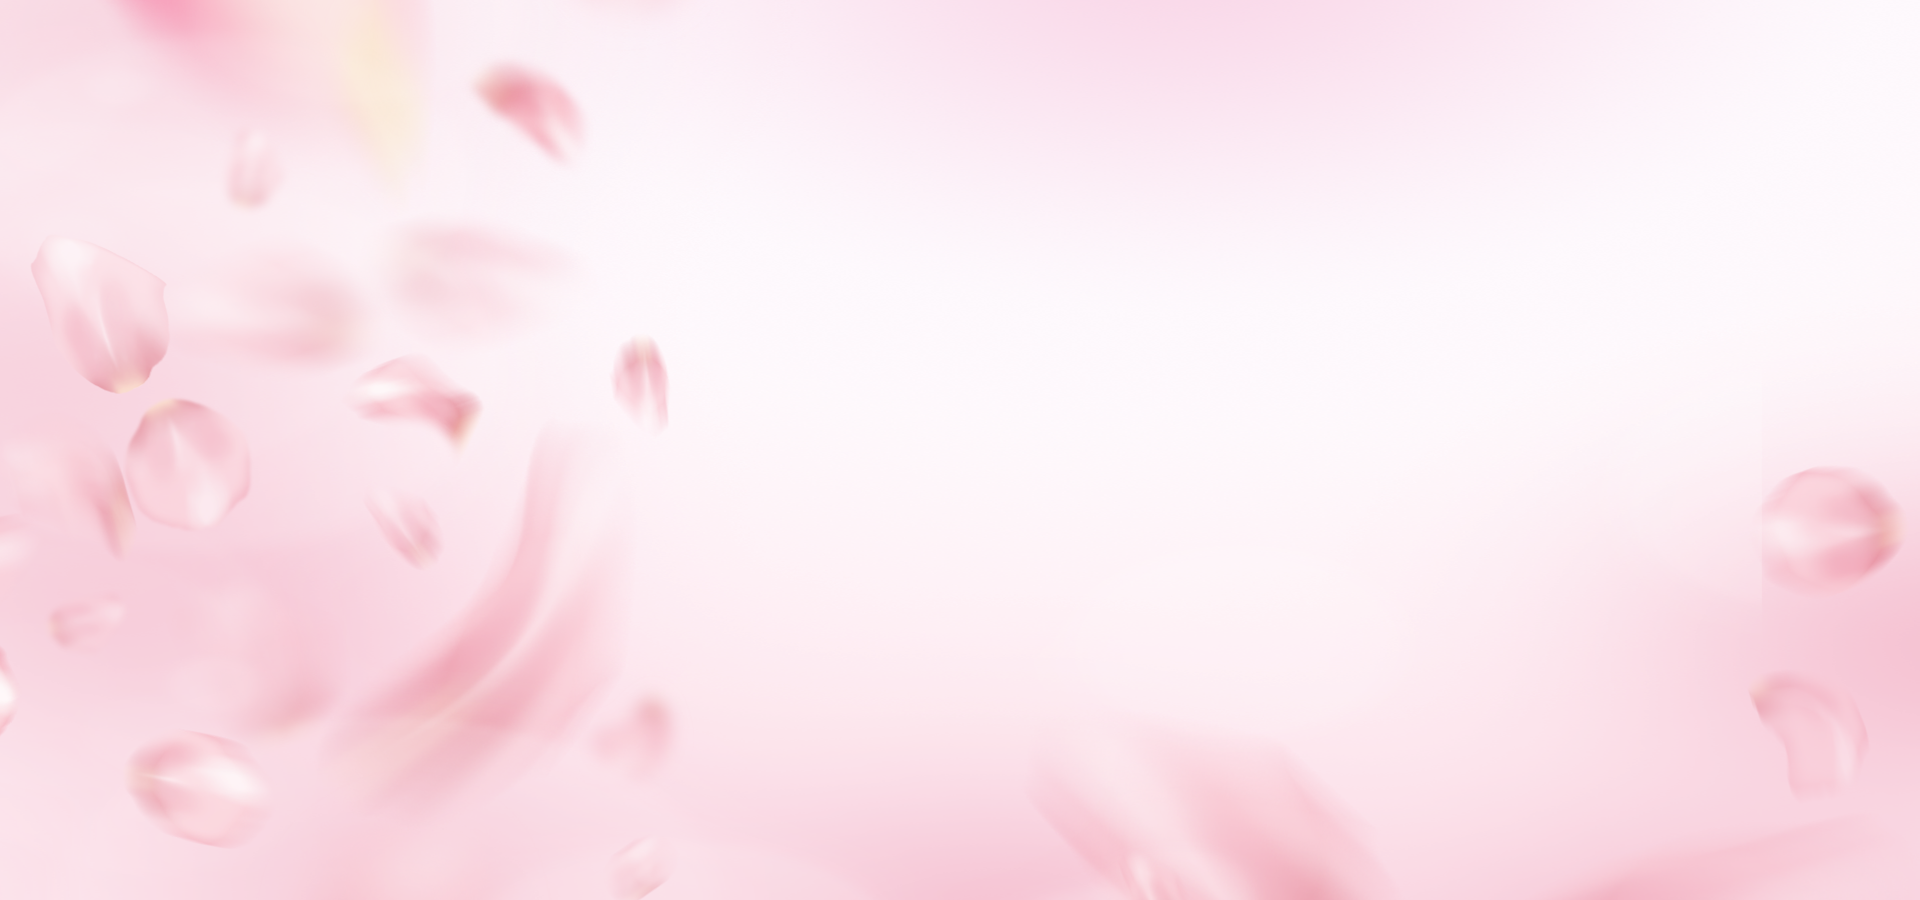 飘落的粉色花瓣背景图片-飘落的粉色花瓣背景素材图片-千库网